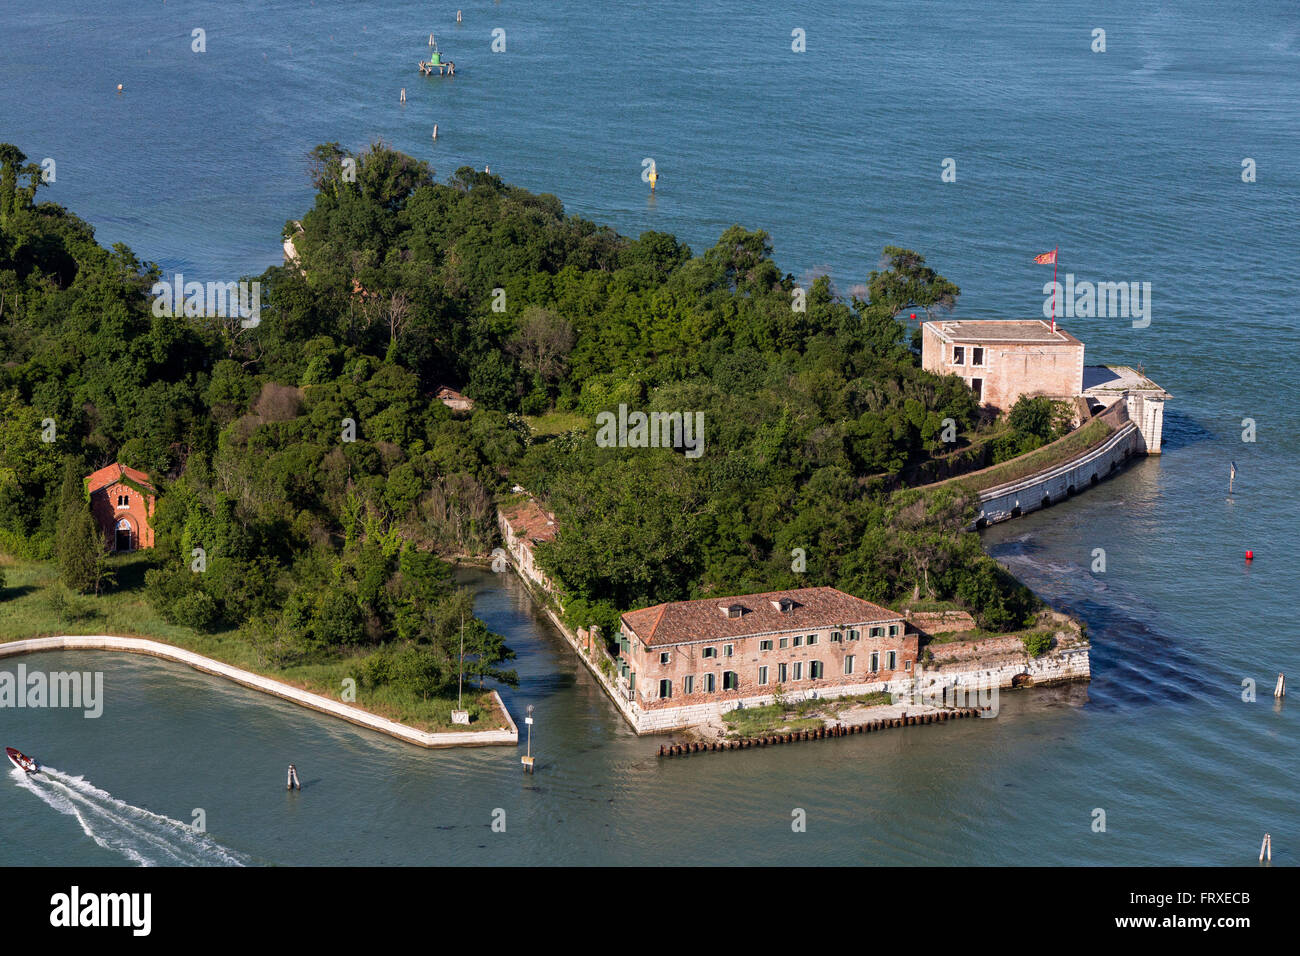 Vista aerea delle isole della laguna veneziana, fortificazione di San Andrea accanto alle isole di Le Vignole e La Certosa, Veneto, Italia Foto Stock